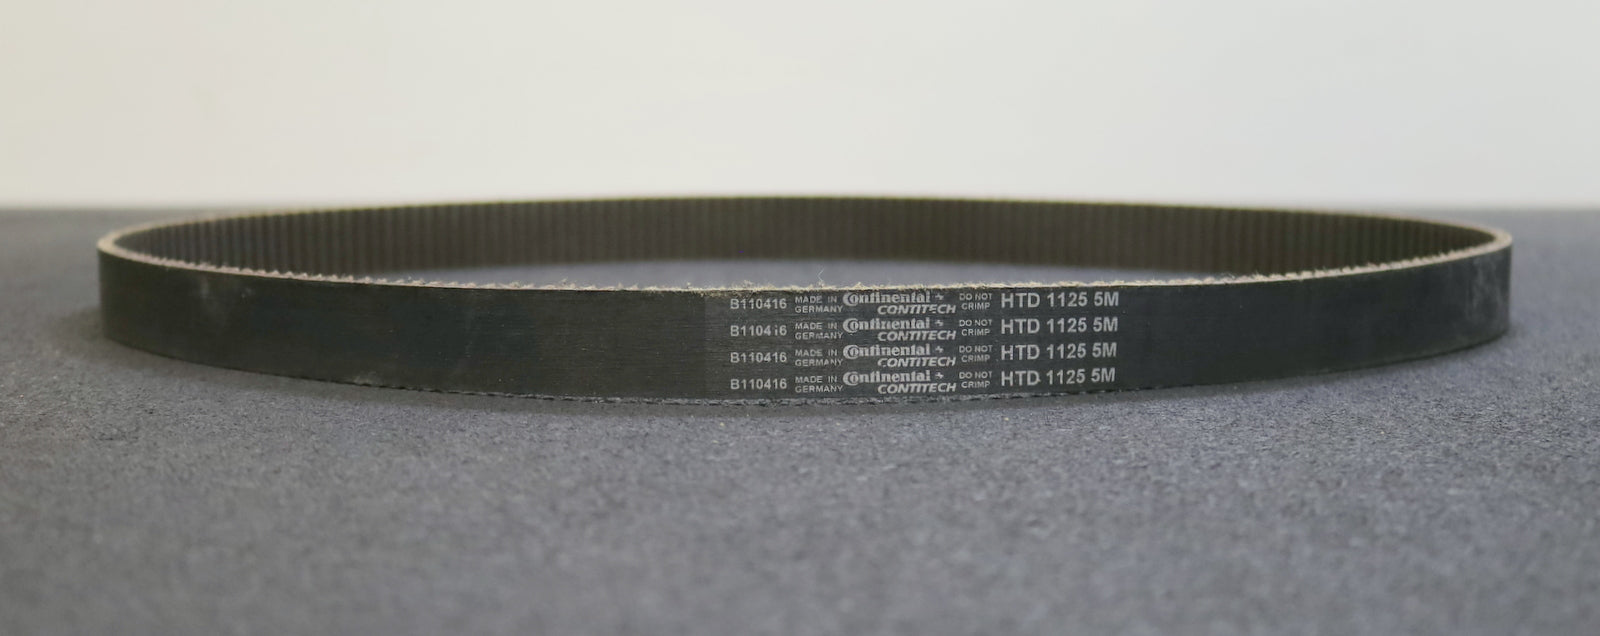 CONTITECH Zahnriemen Timing belt 5M Länge 1125mm Breite 24mm - unbenutzt